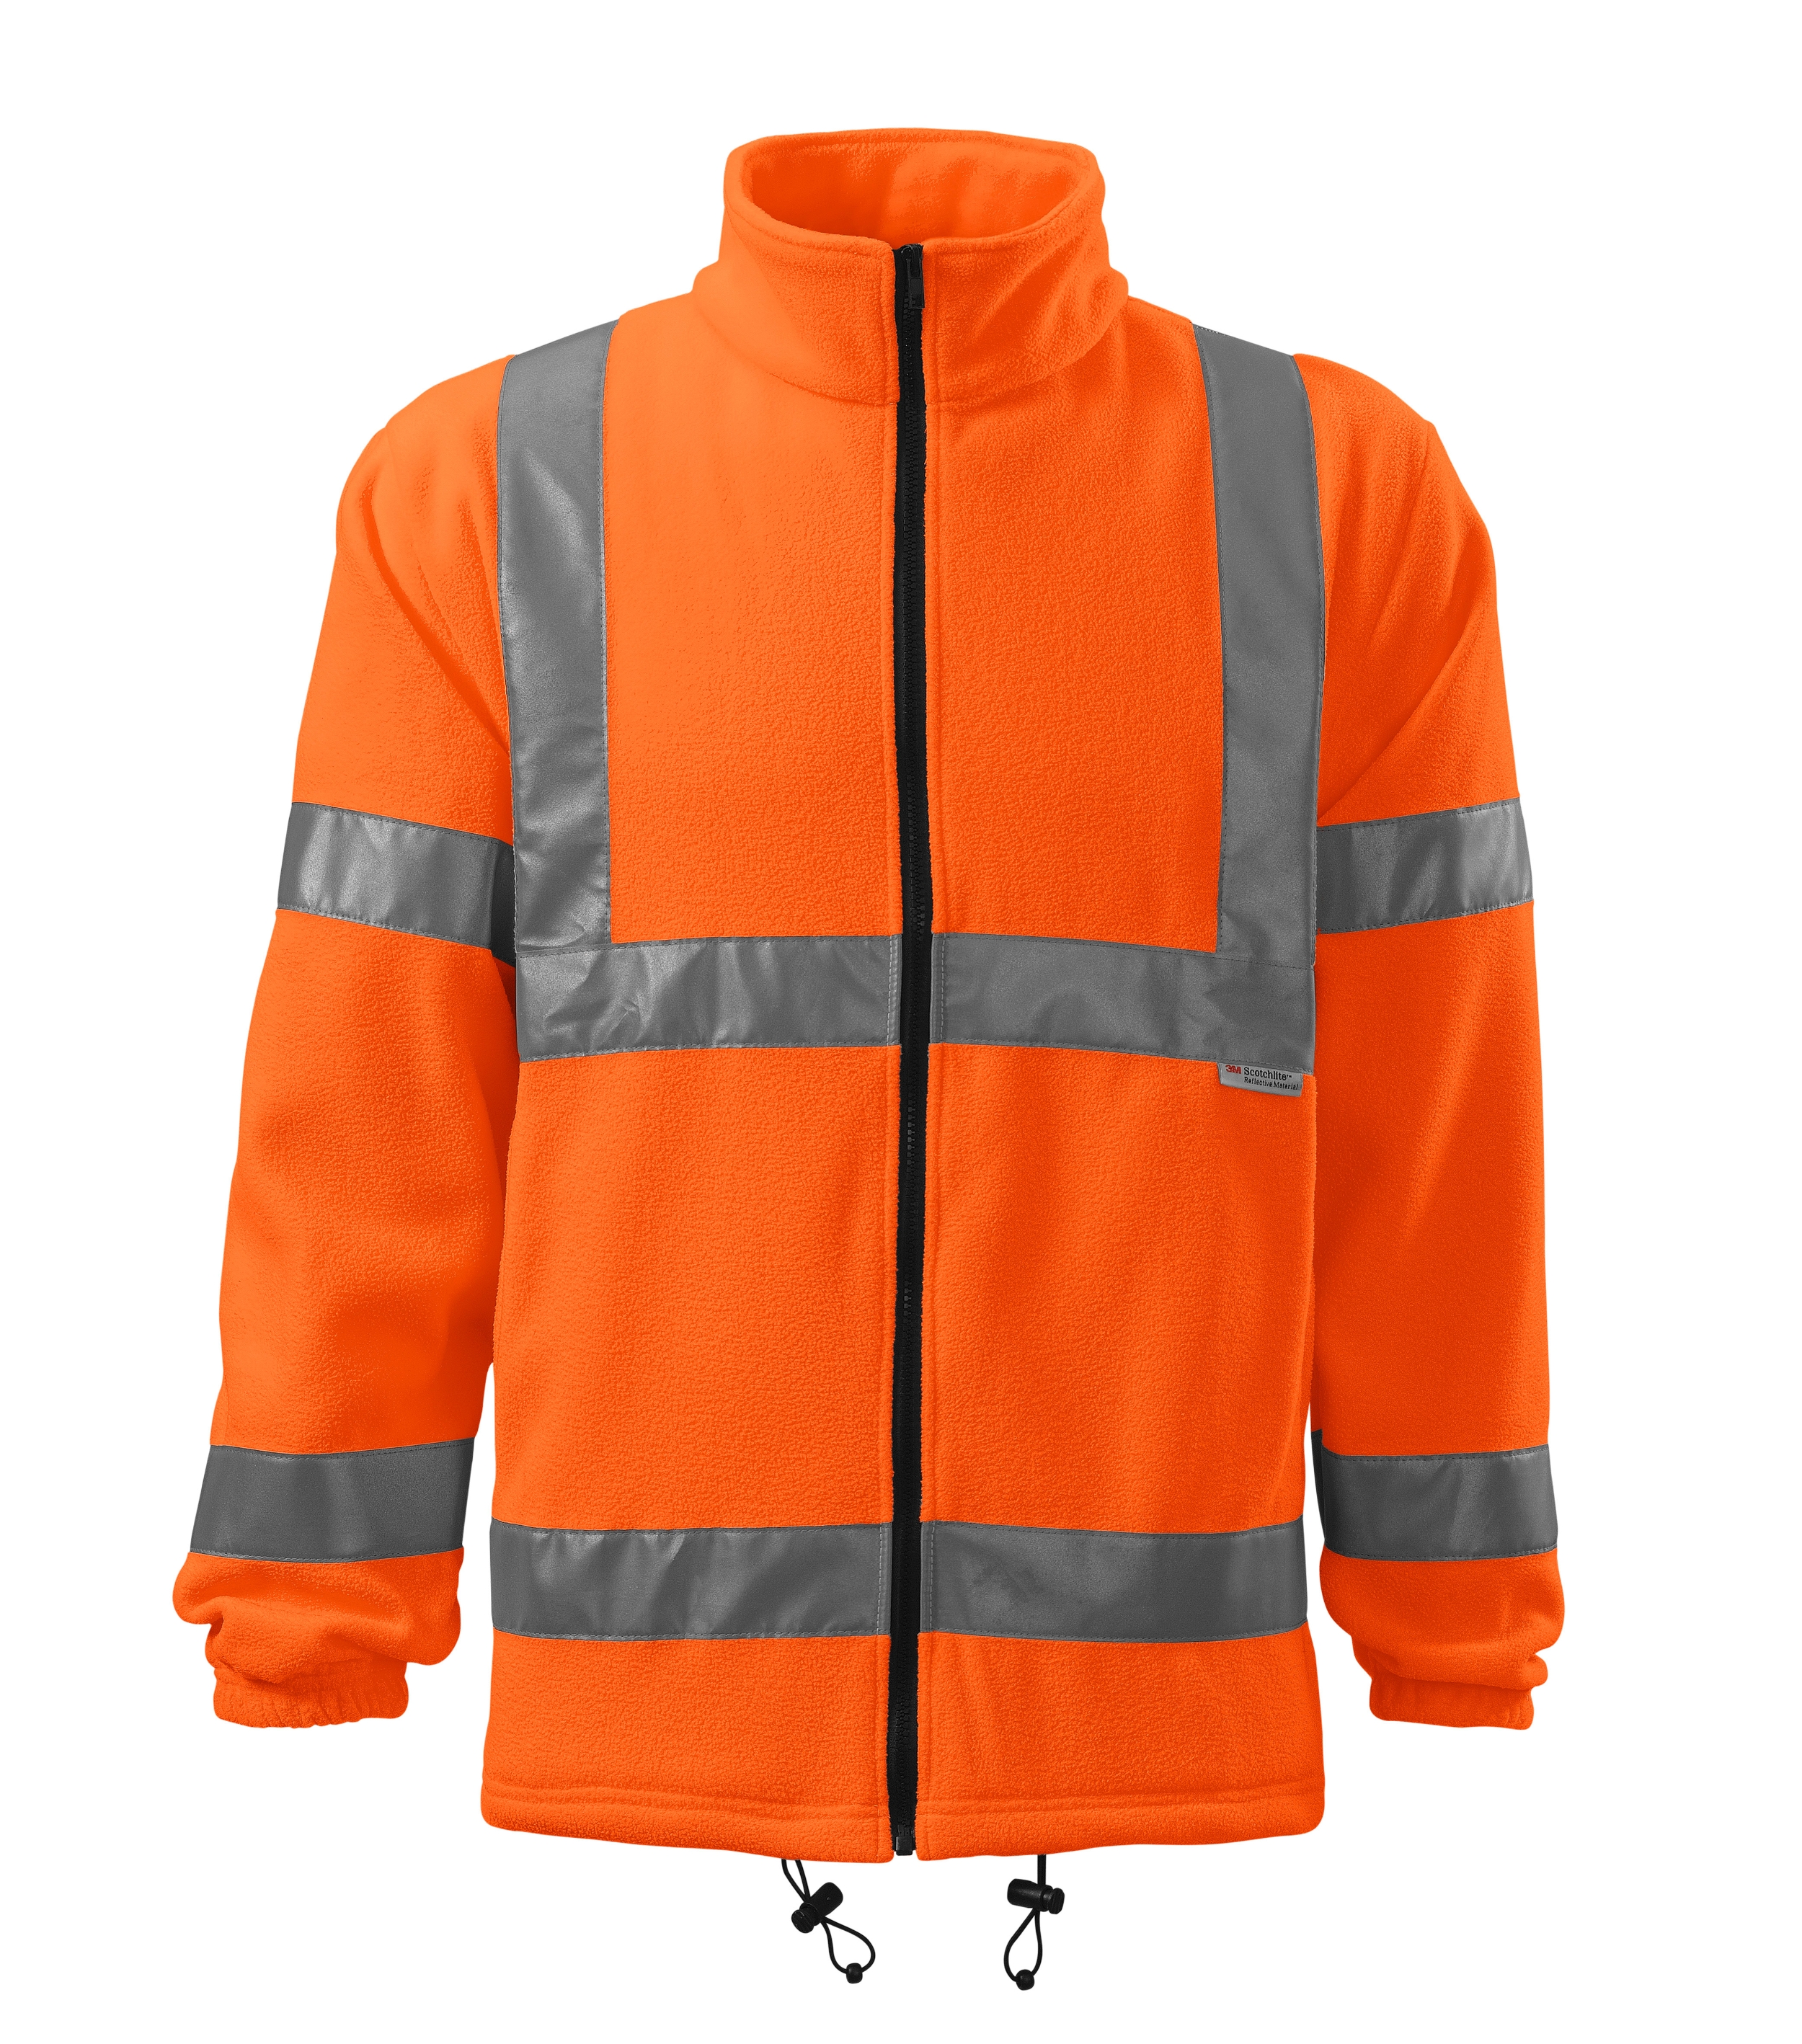 Herren / Damen Warnschutzjacke in gelb oder orange - HV FLEECE JACKET5V1 - hochsichtbar und Leistentaschen mit Krampenreißvershluss - warnschutz  Arbeitsjacke für Damen und Herren 